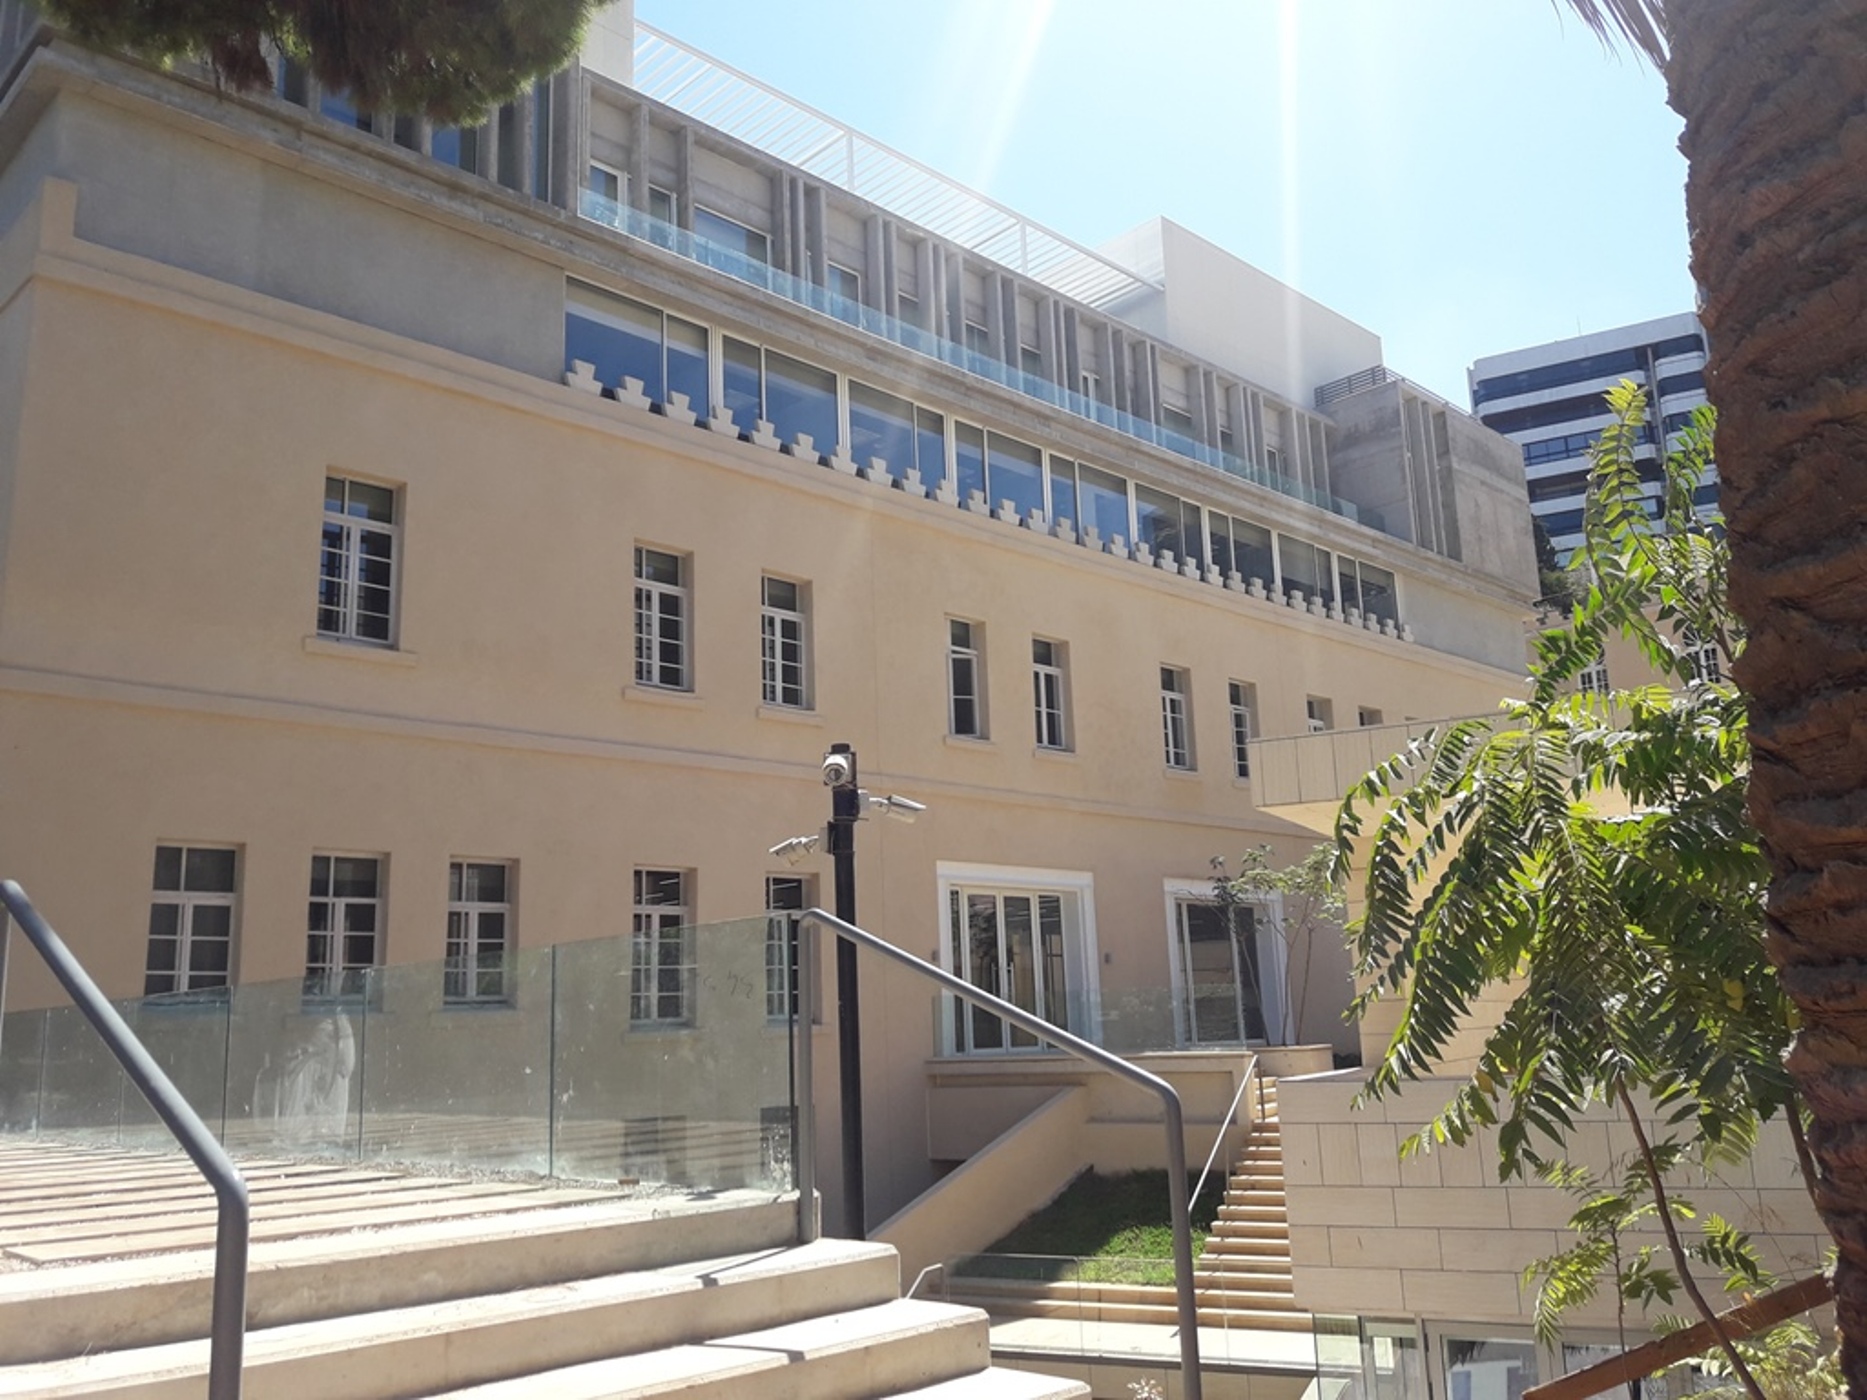 Balamand ALBA University – Sin El Fil, Lebanon